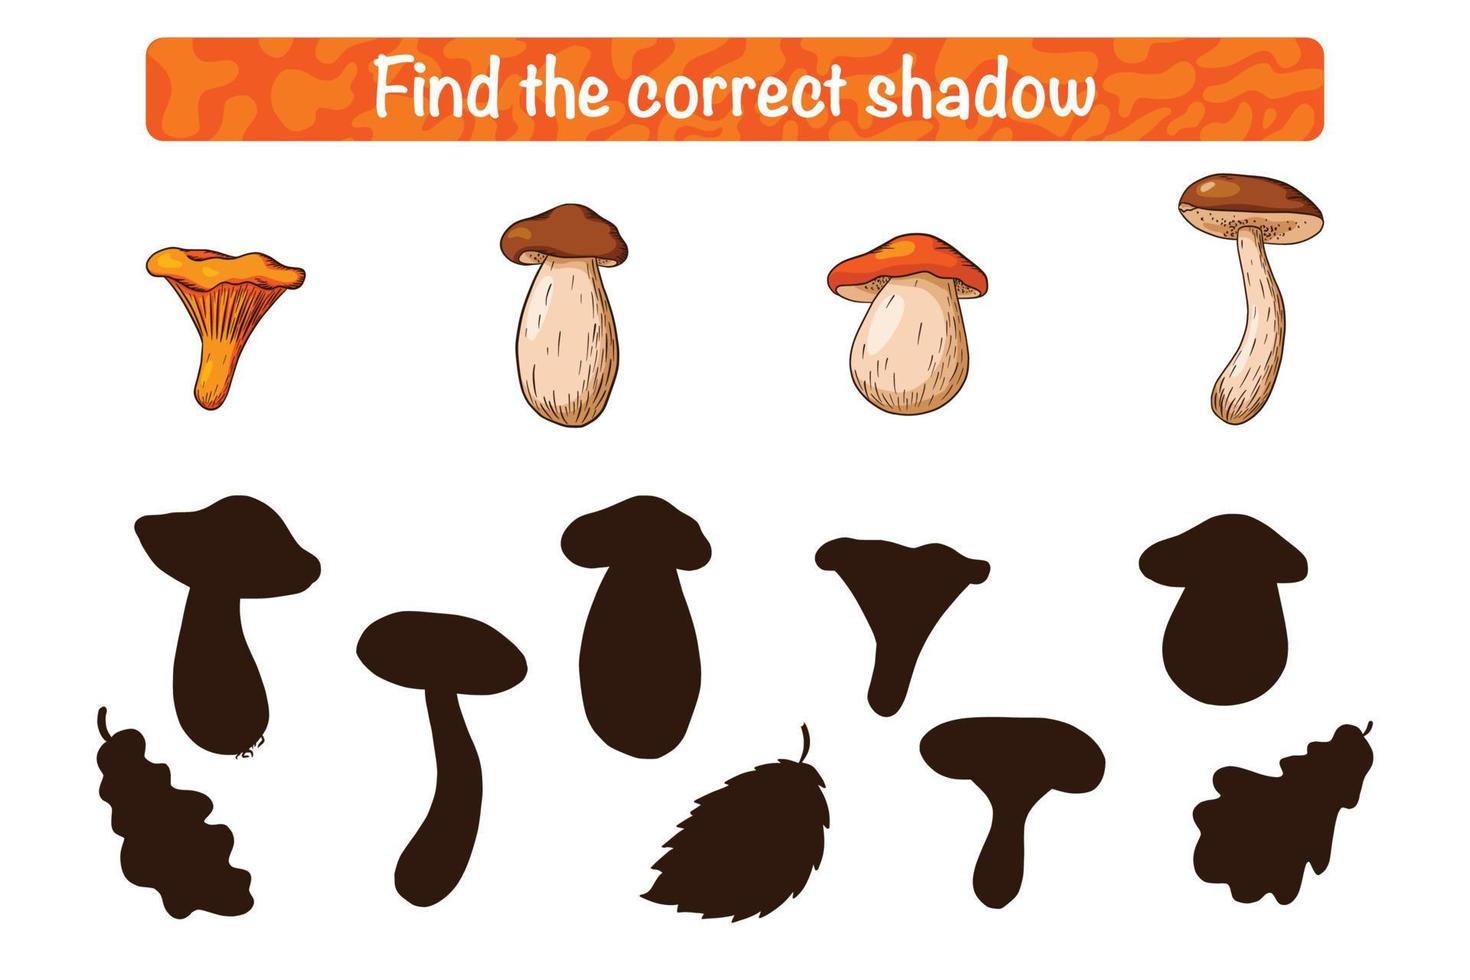 trova il gioco educativo dell'ombra del fungo commestibile corretto per i bambini vettore